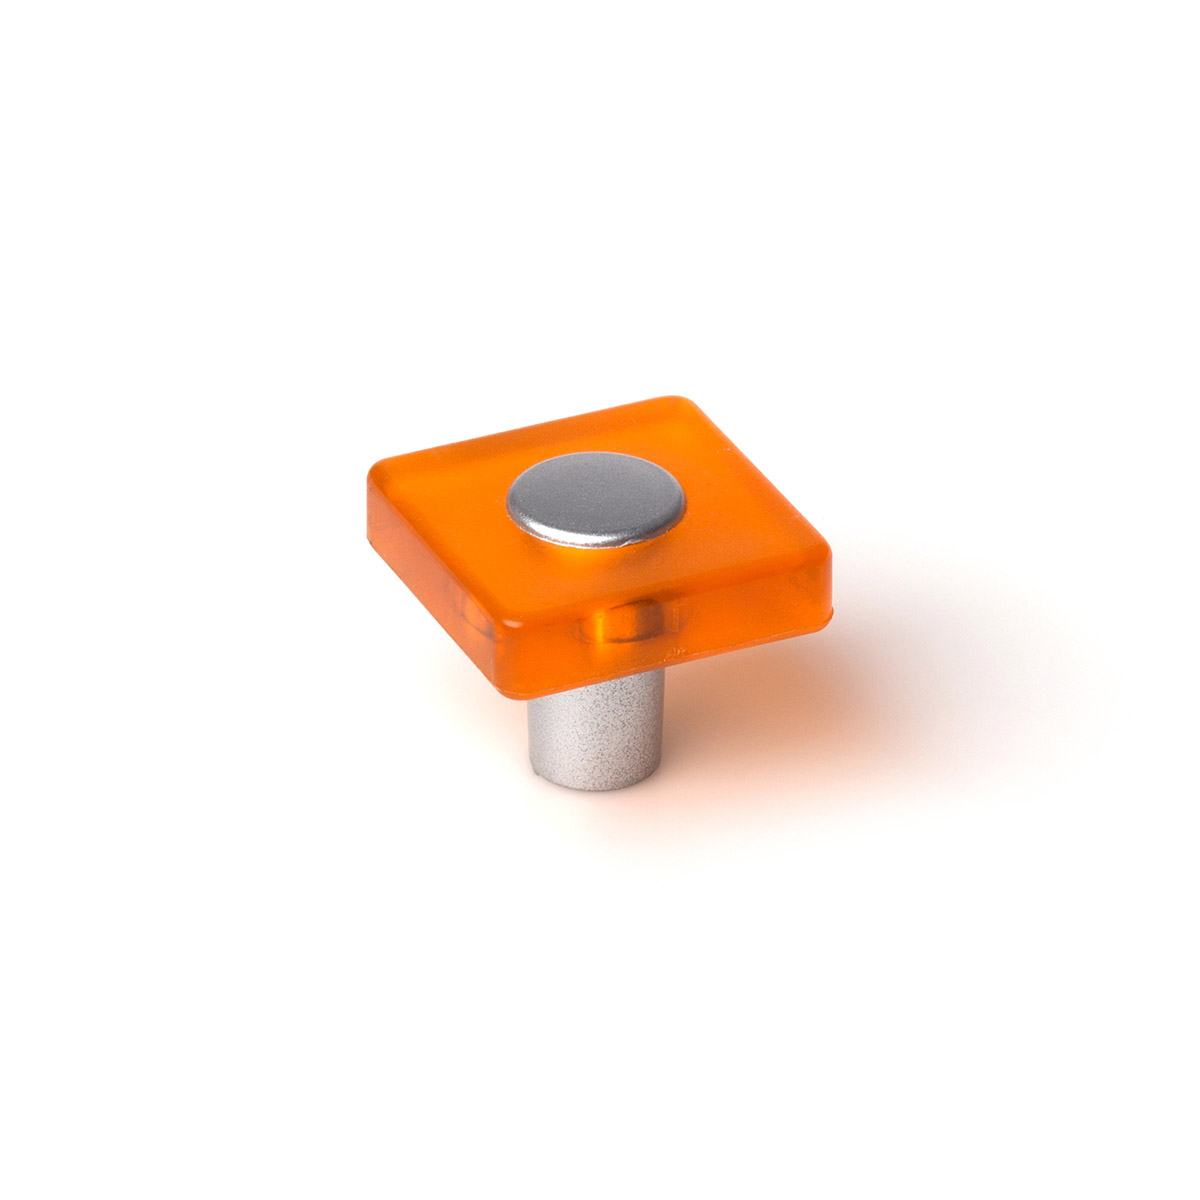 Pomo de plástico con acabado naranja, dimensiones: 30x30x26mm